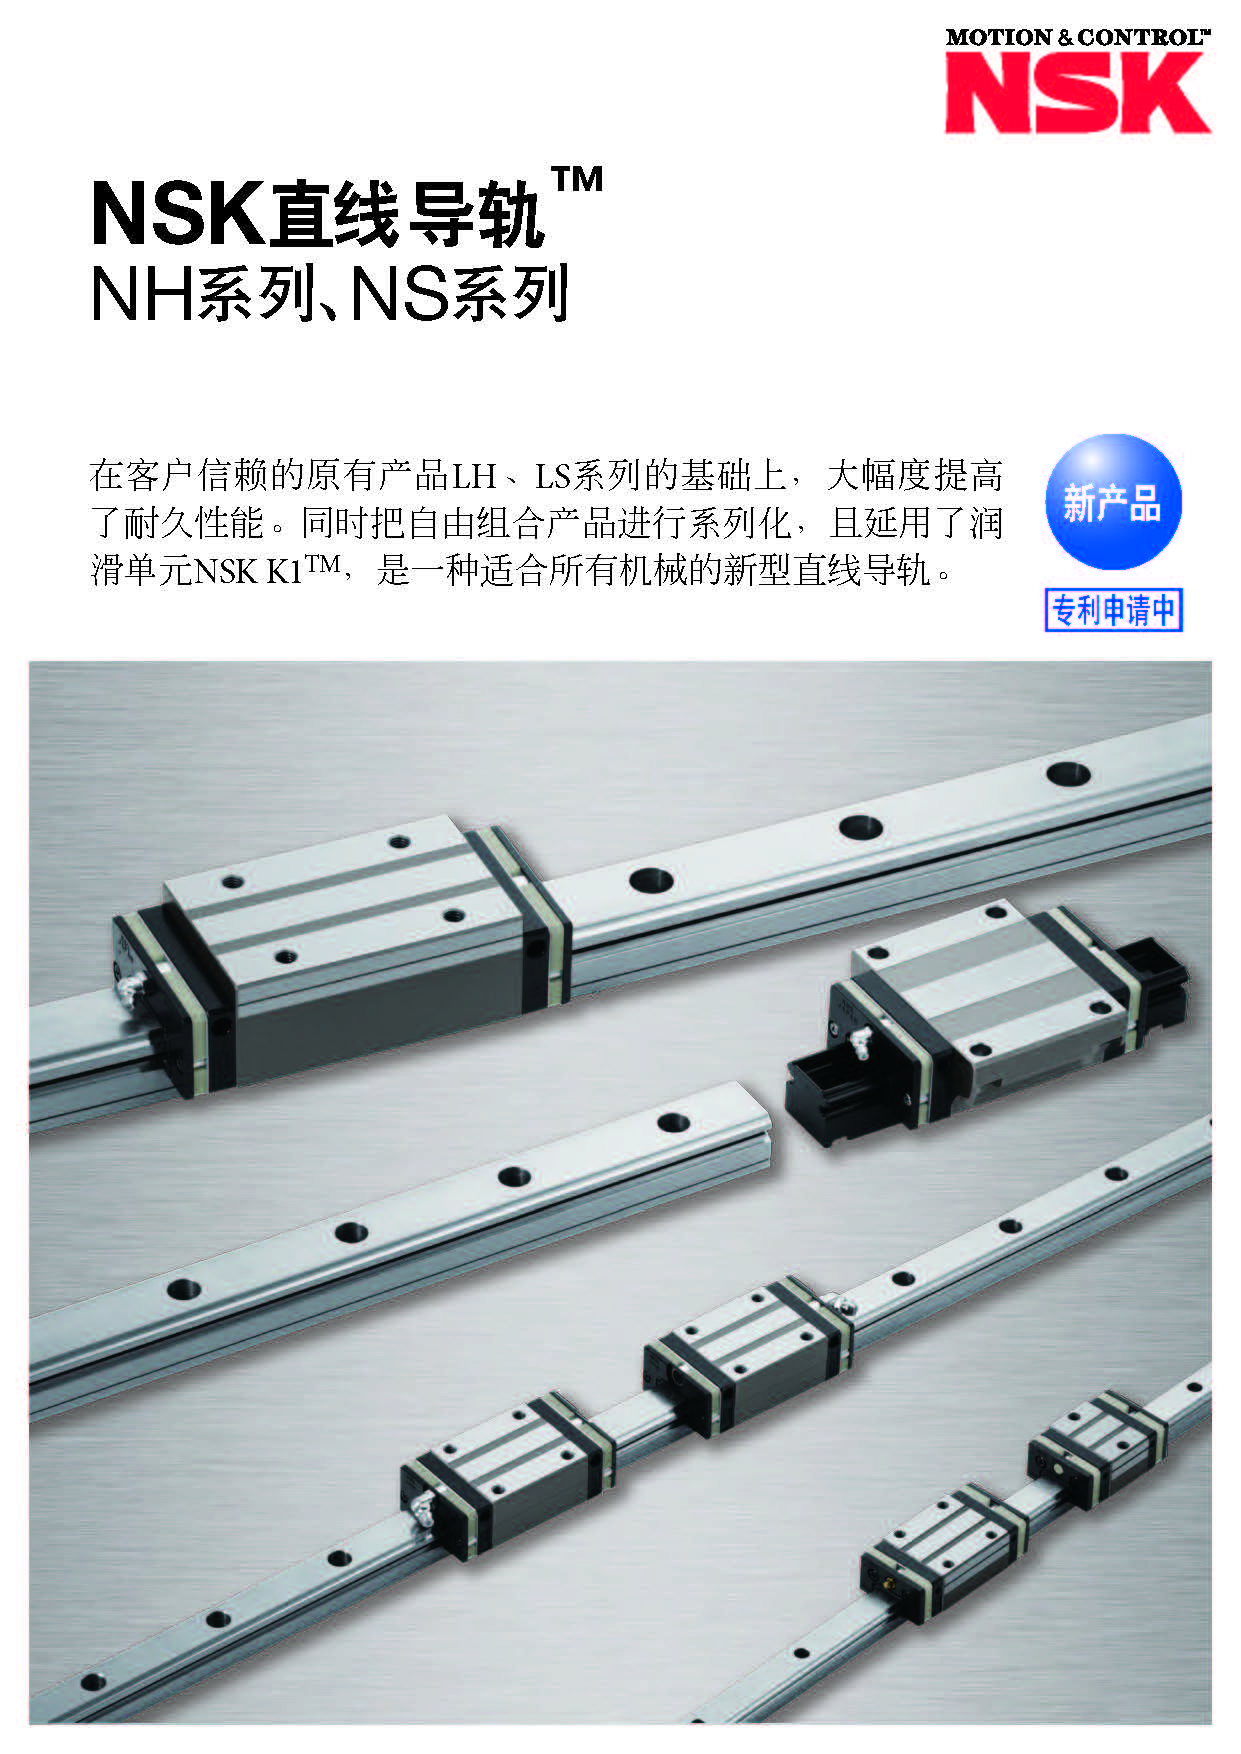 nsk直线导轨nh/ns系列选型手册样本下载